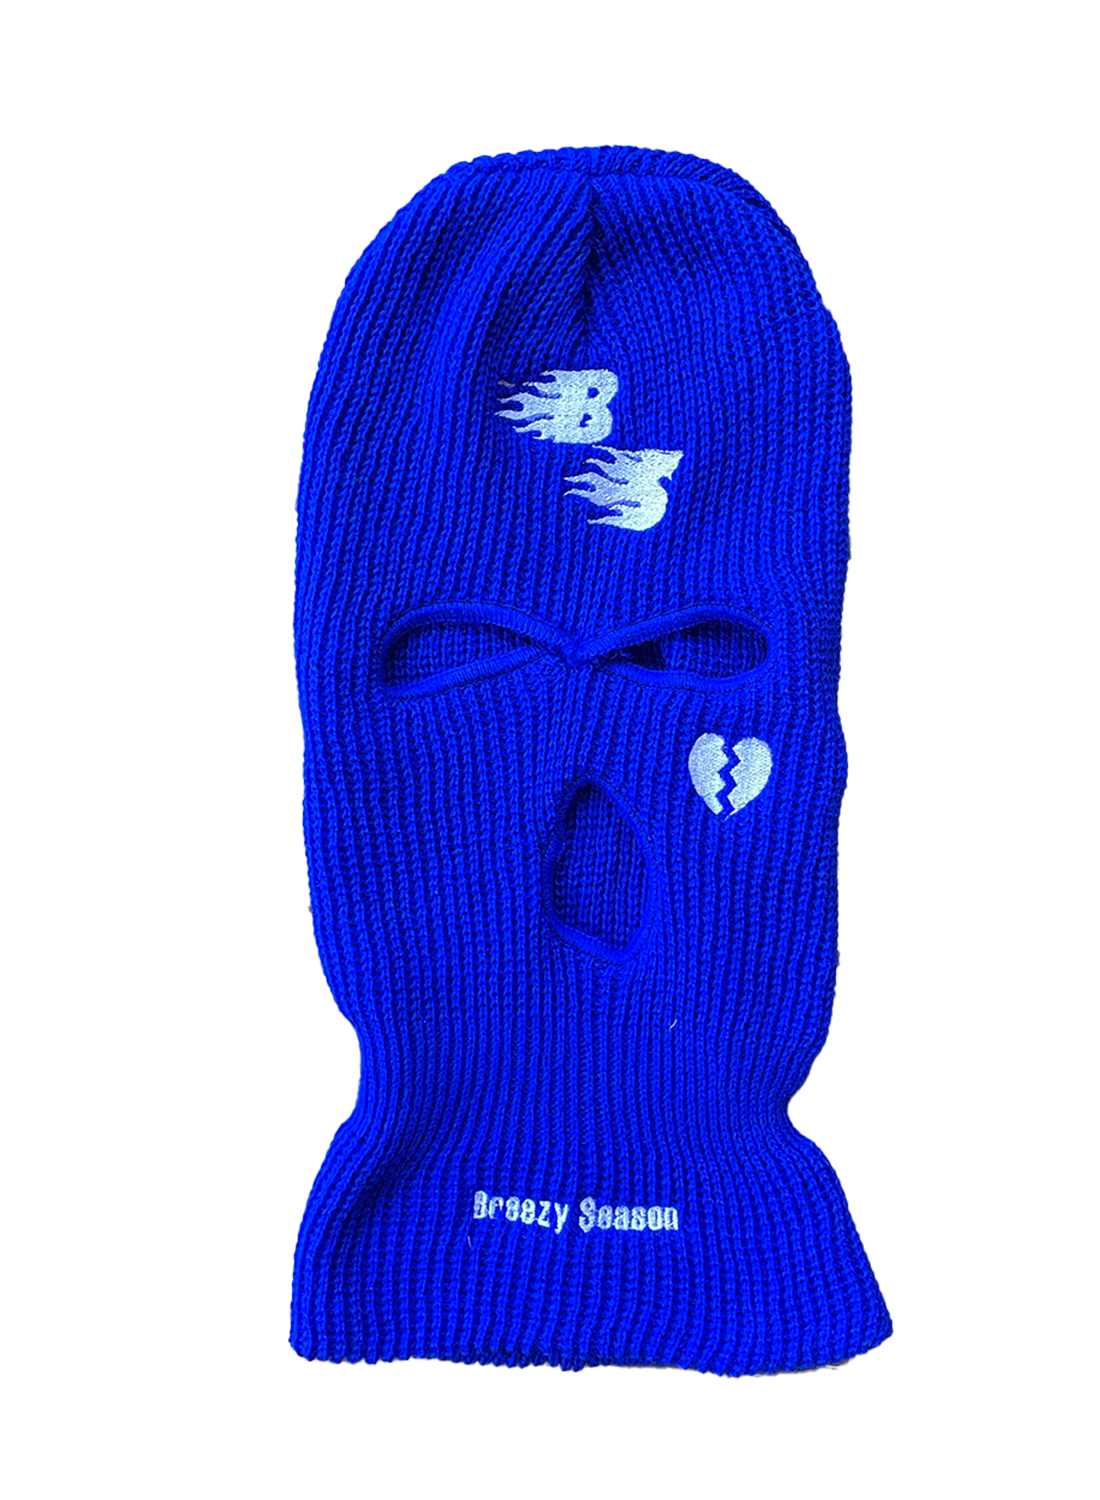 Blue Ski Mask - Breezy Season 